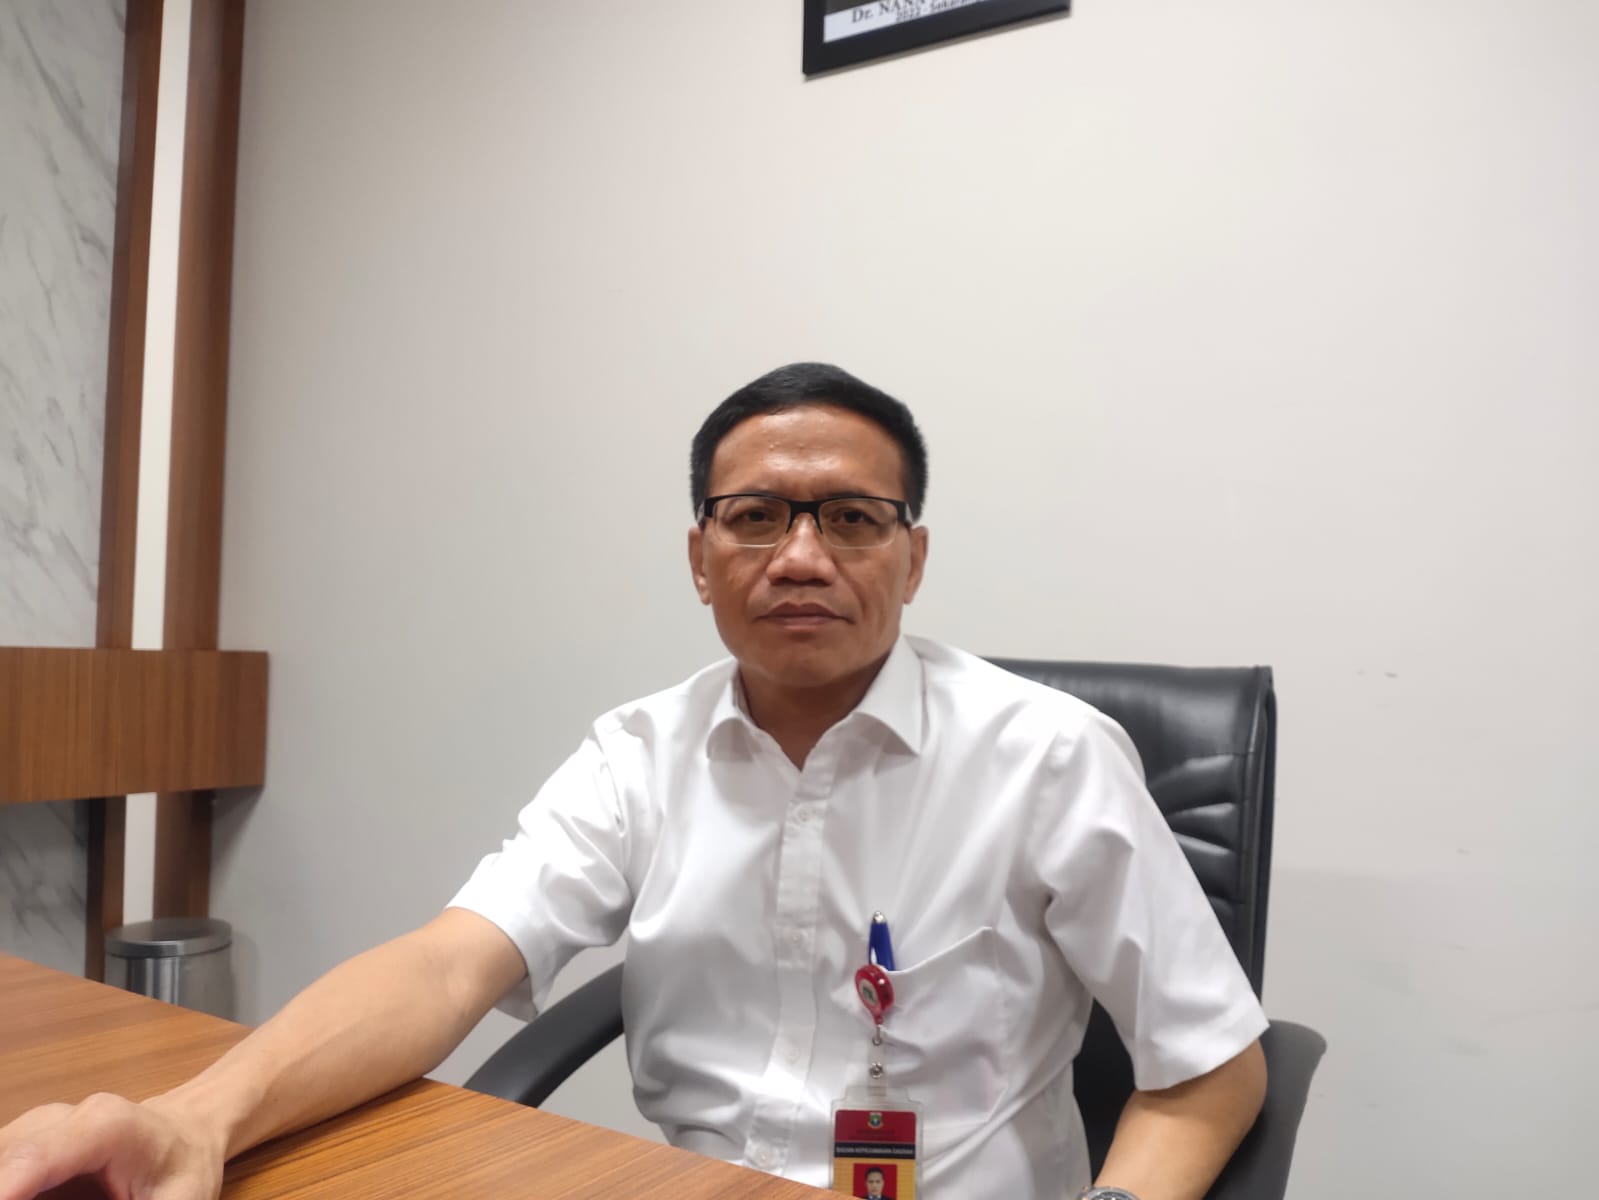 Terapkan WFH, Pemprov Banten Tunggu Regulasi dari Pemerintah Pusat 